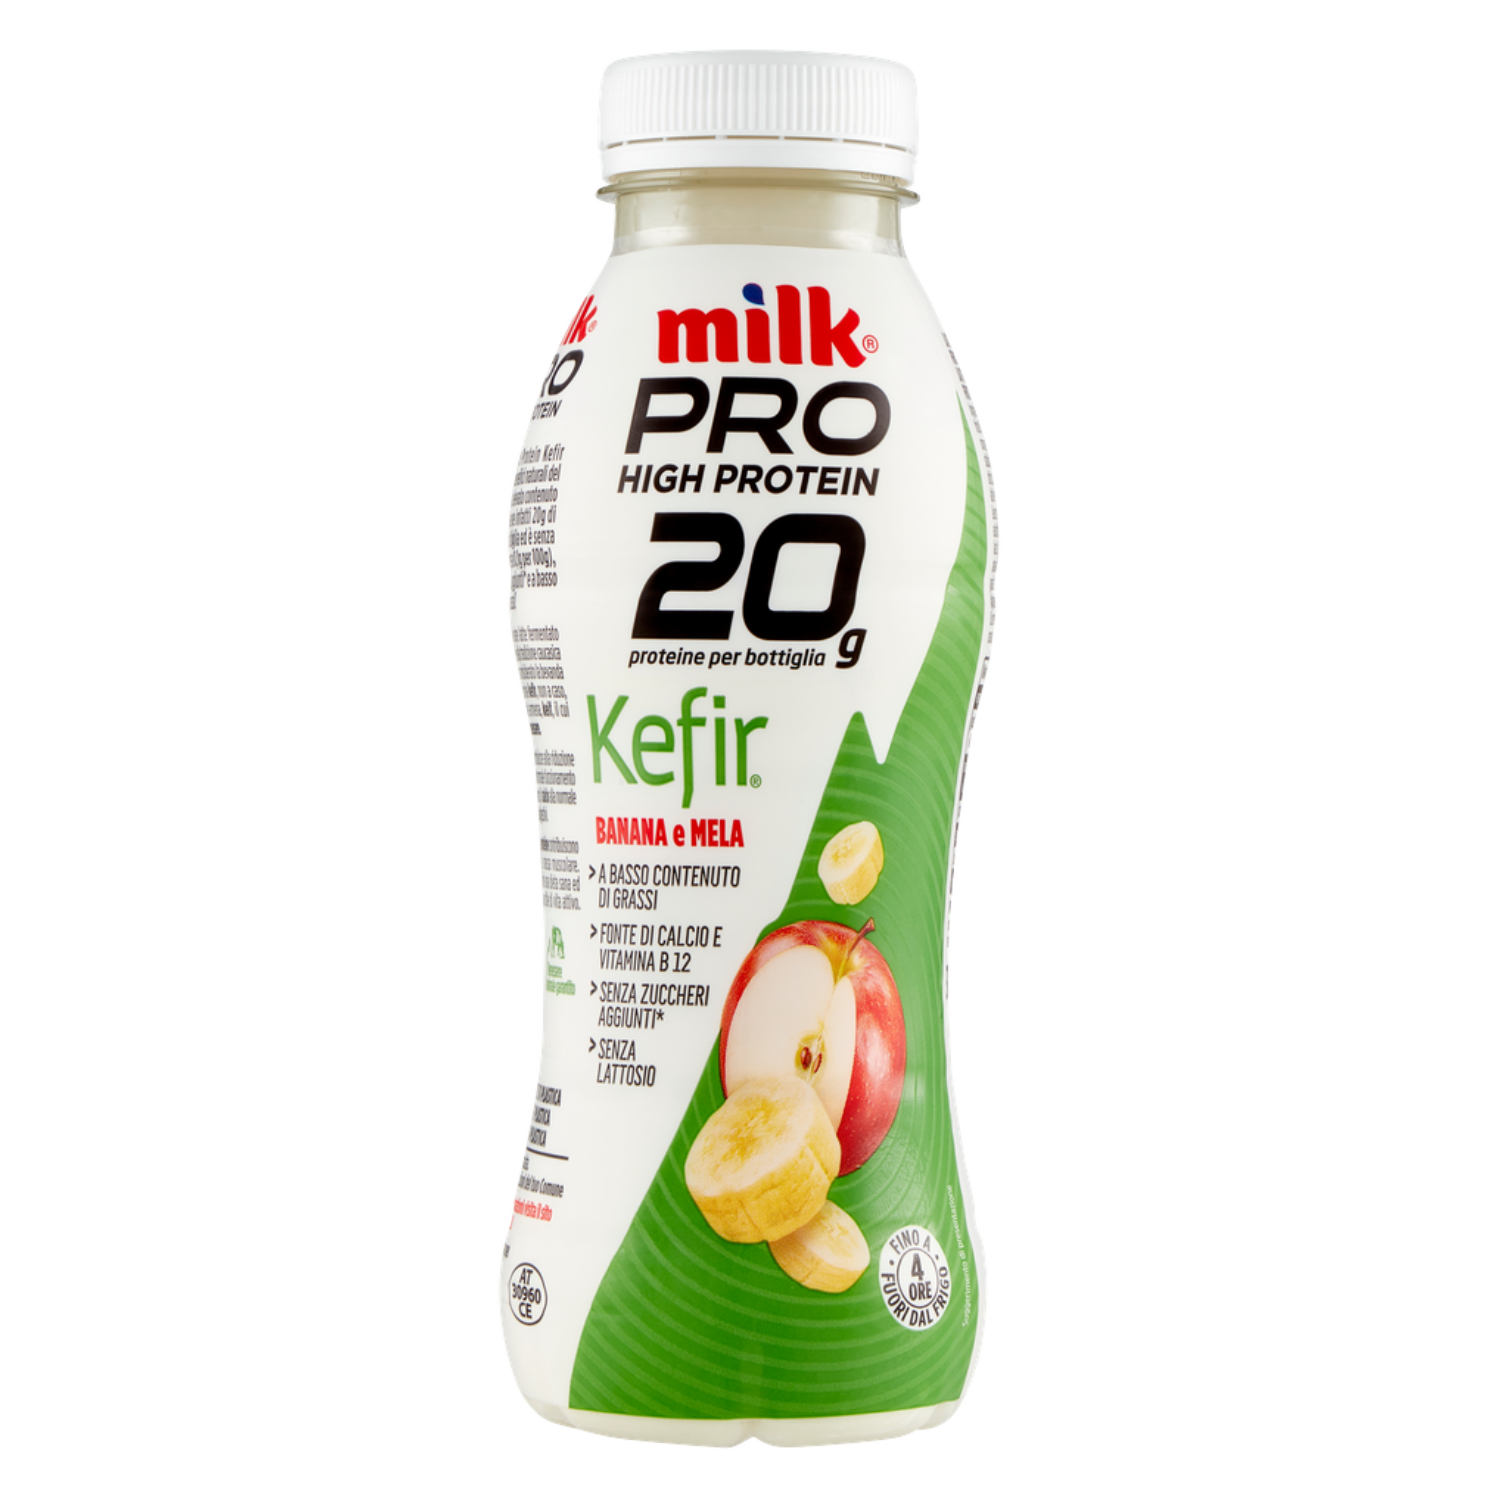 Milk Pro protein Kefir banana/mela 310g Latteria Nom